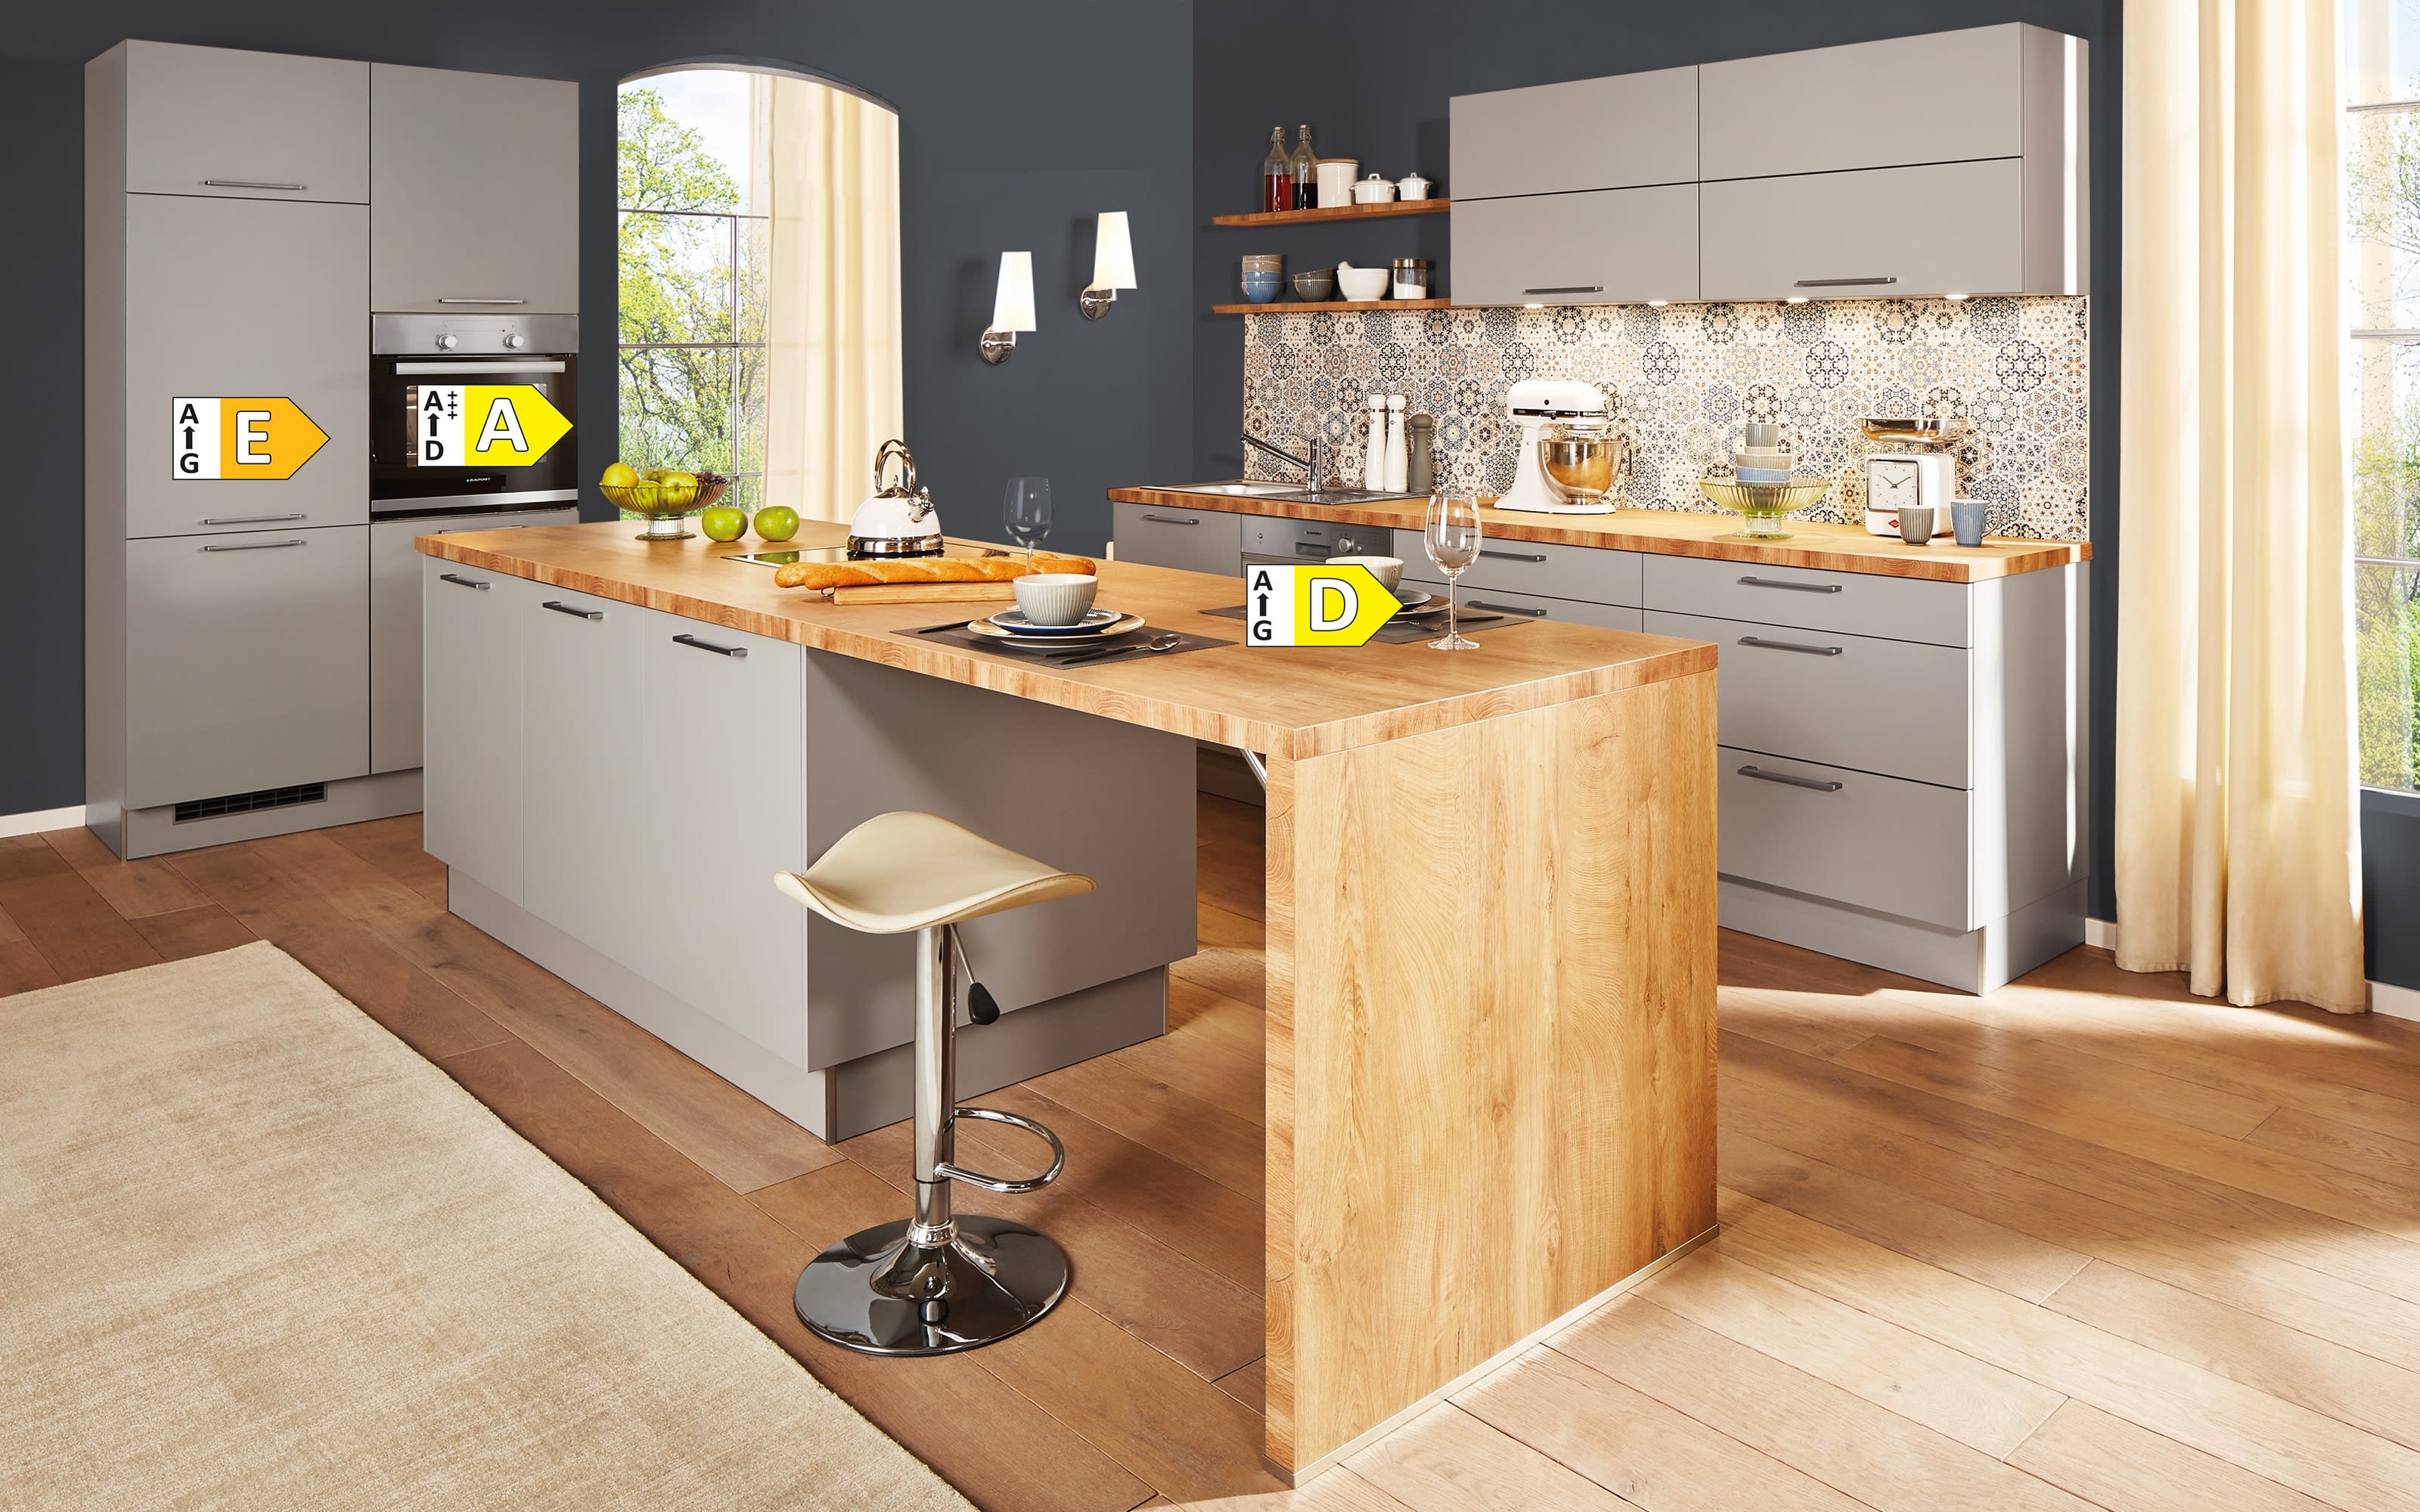 Einbauküche Perfect Soft, perlgrau, inkl. Siemens Elektrogeräte und Miele Geschirrspüler